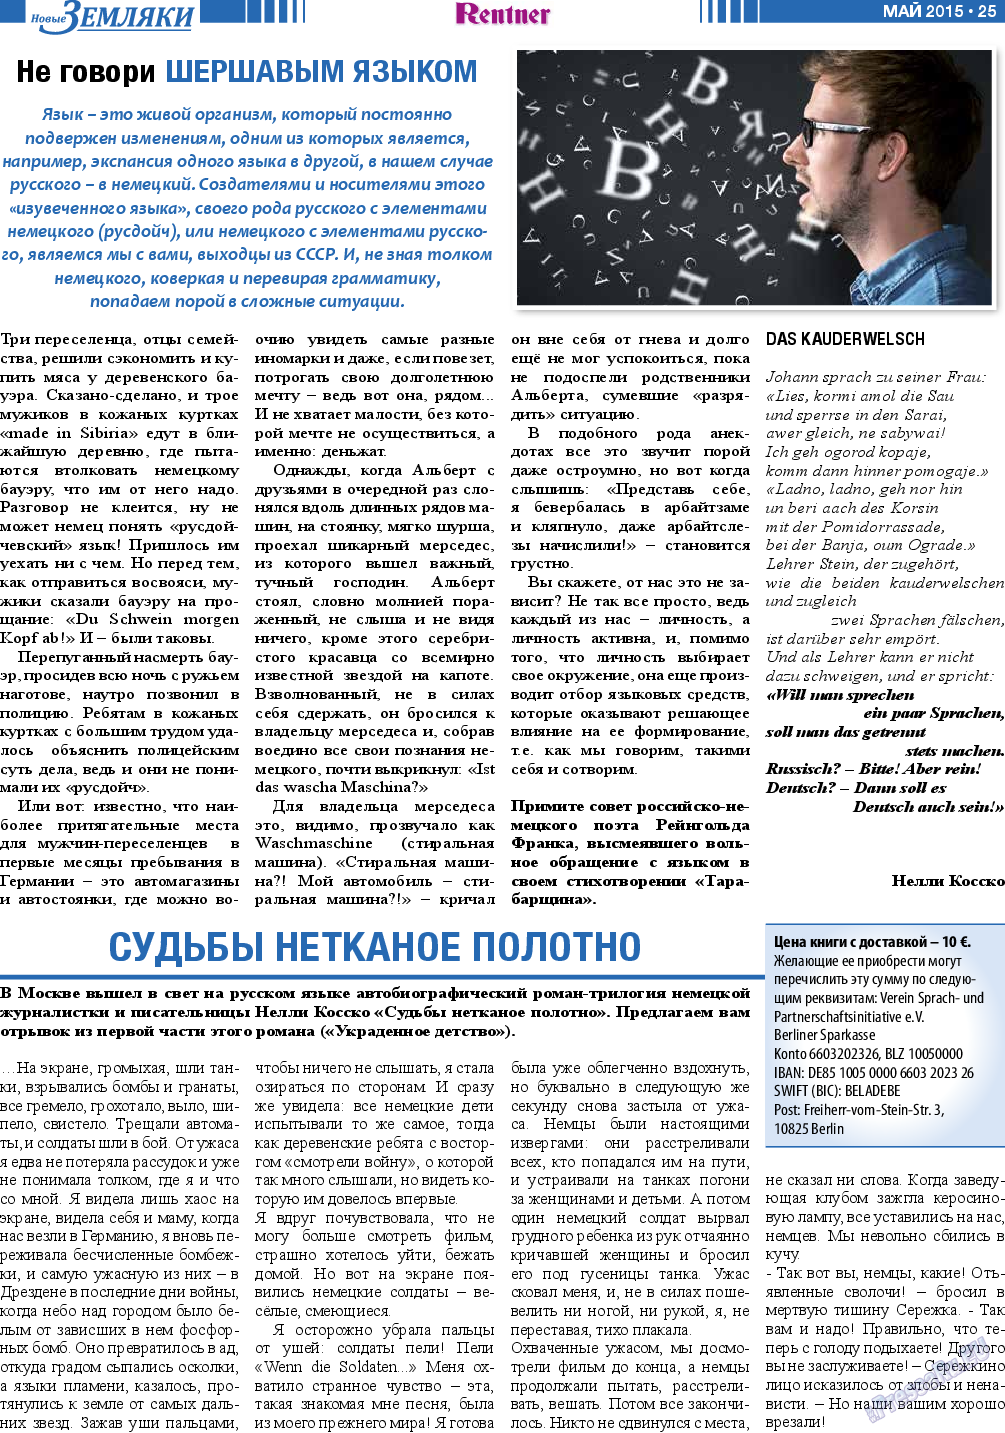 Новые Земляки, газета. 2015 №5 стр.25